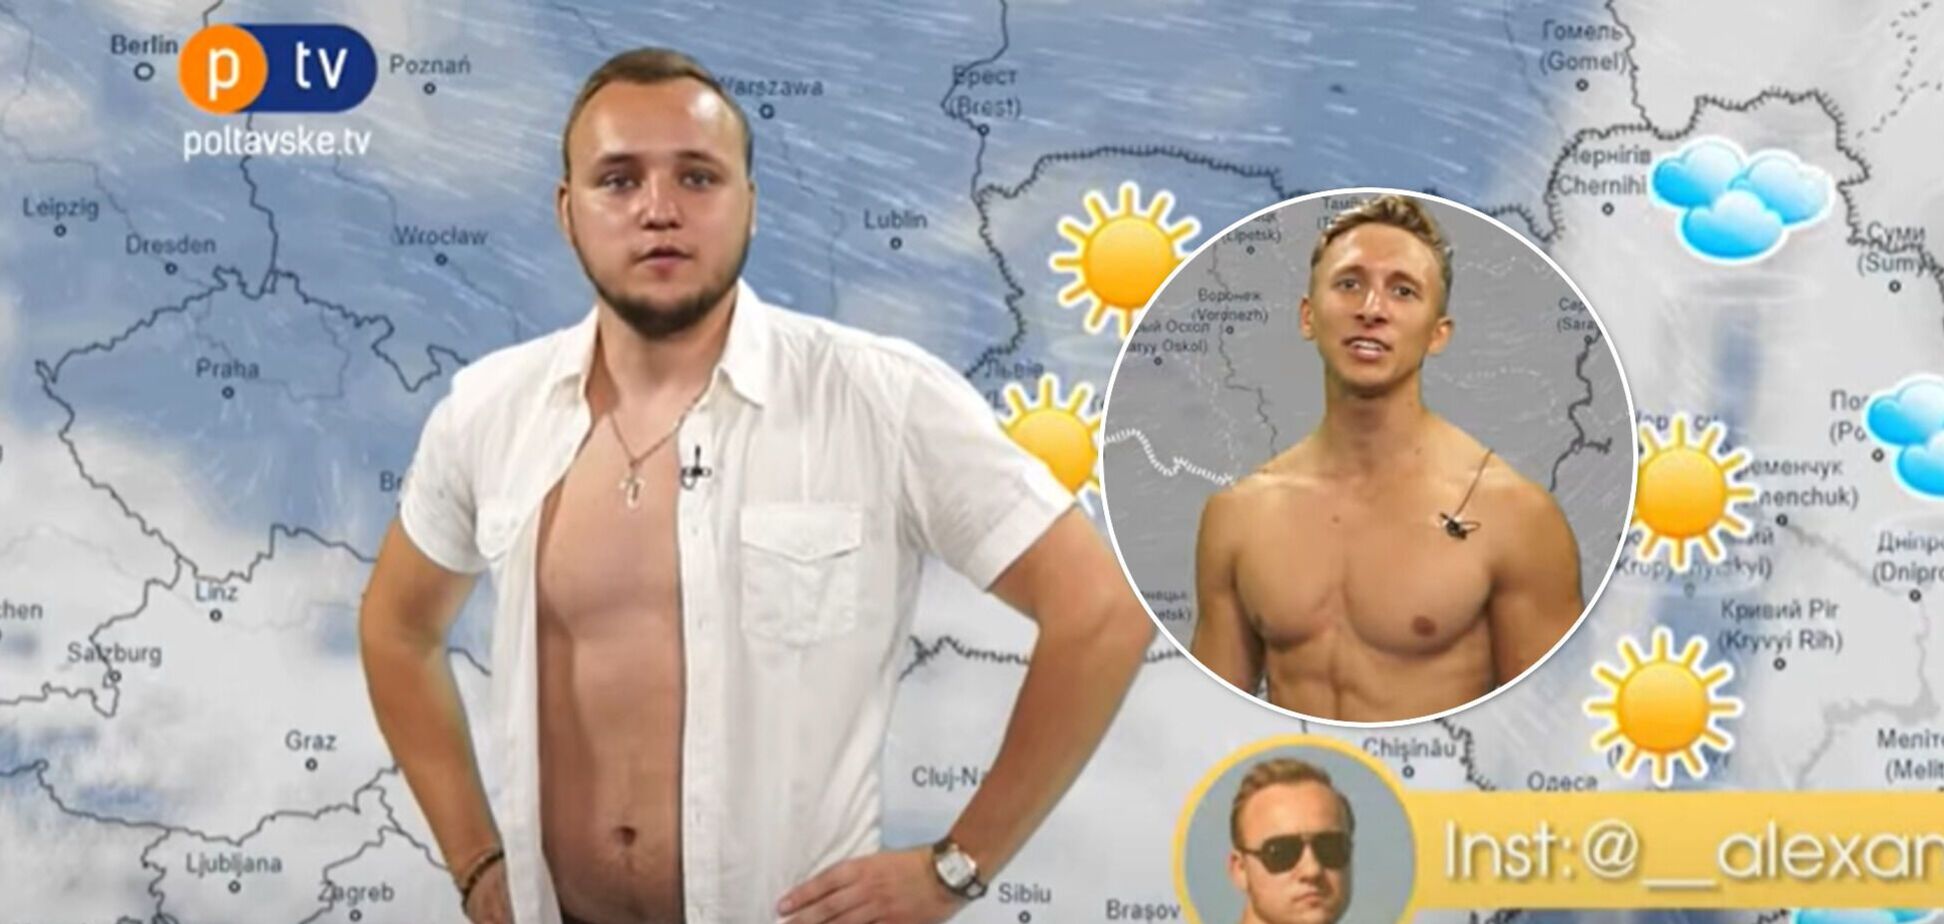 Ведущие полтавского телеканала объявили прогноз погоды в полуголом виде. Видео